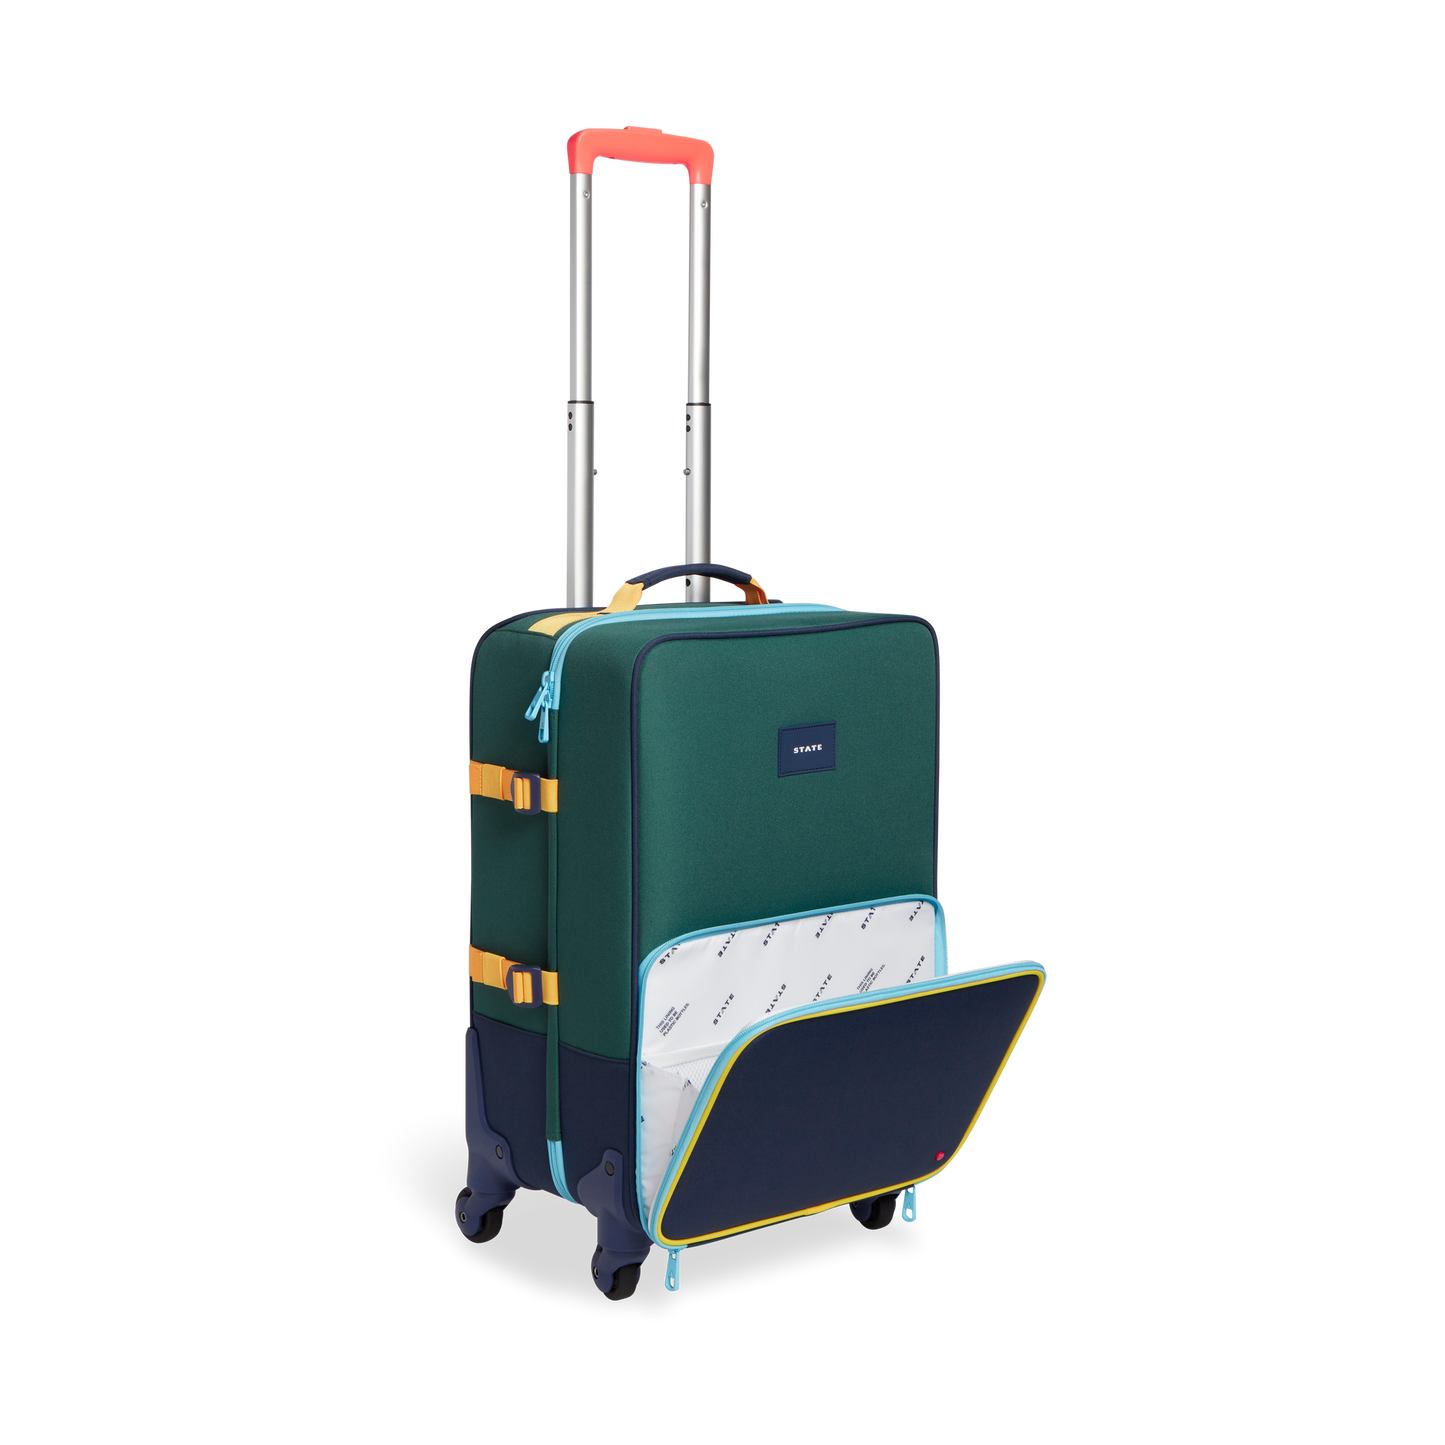 State Logan Suitcase